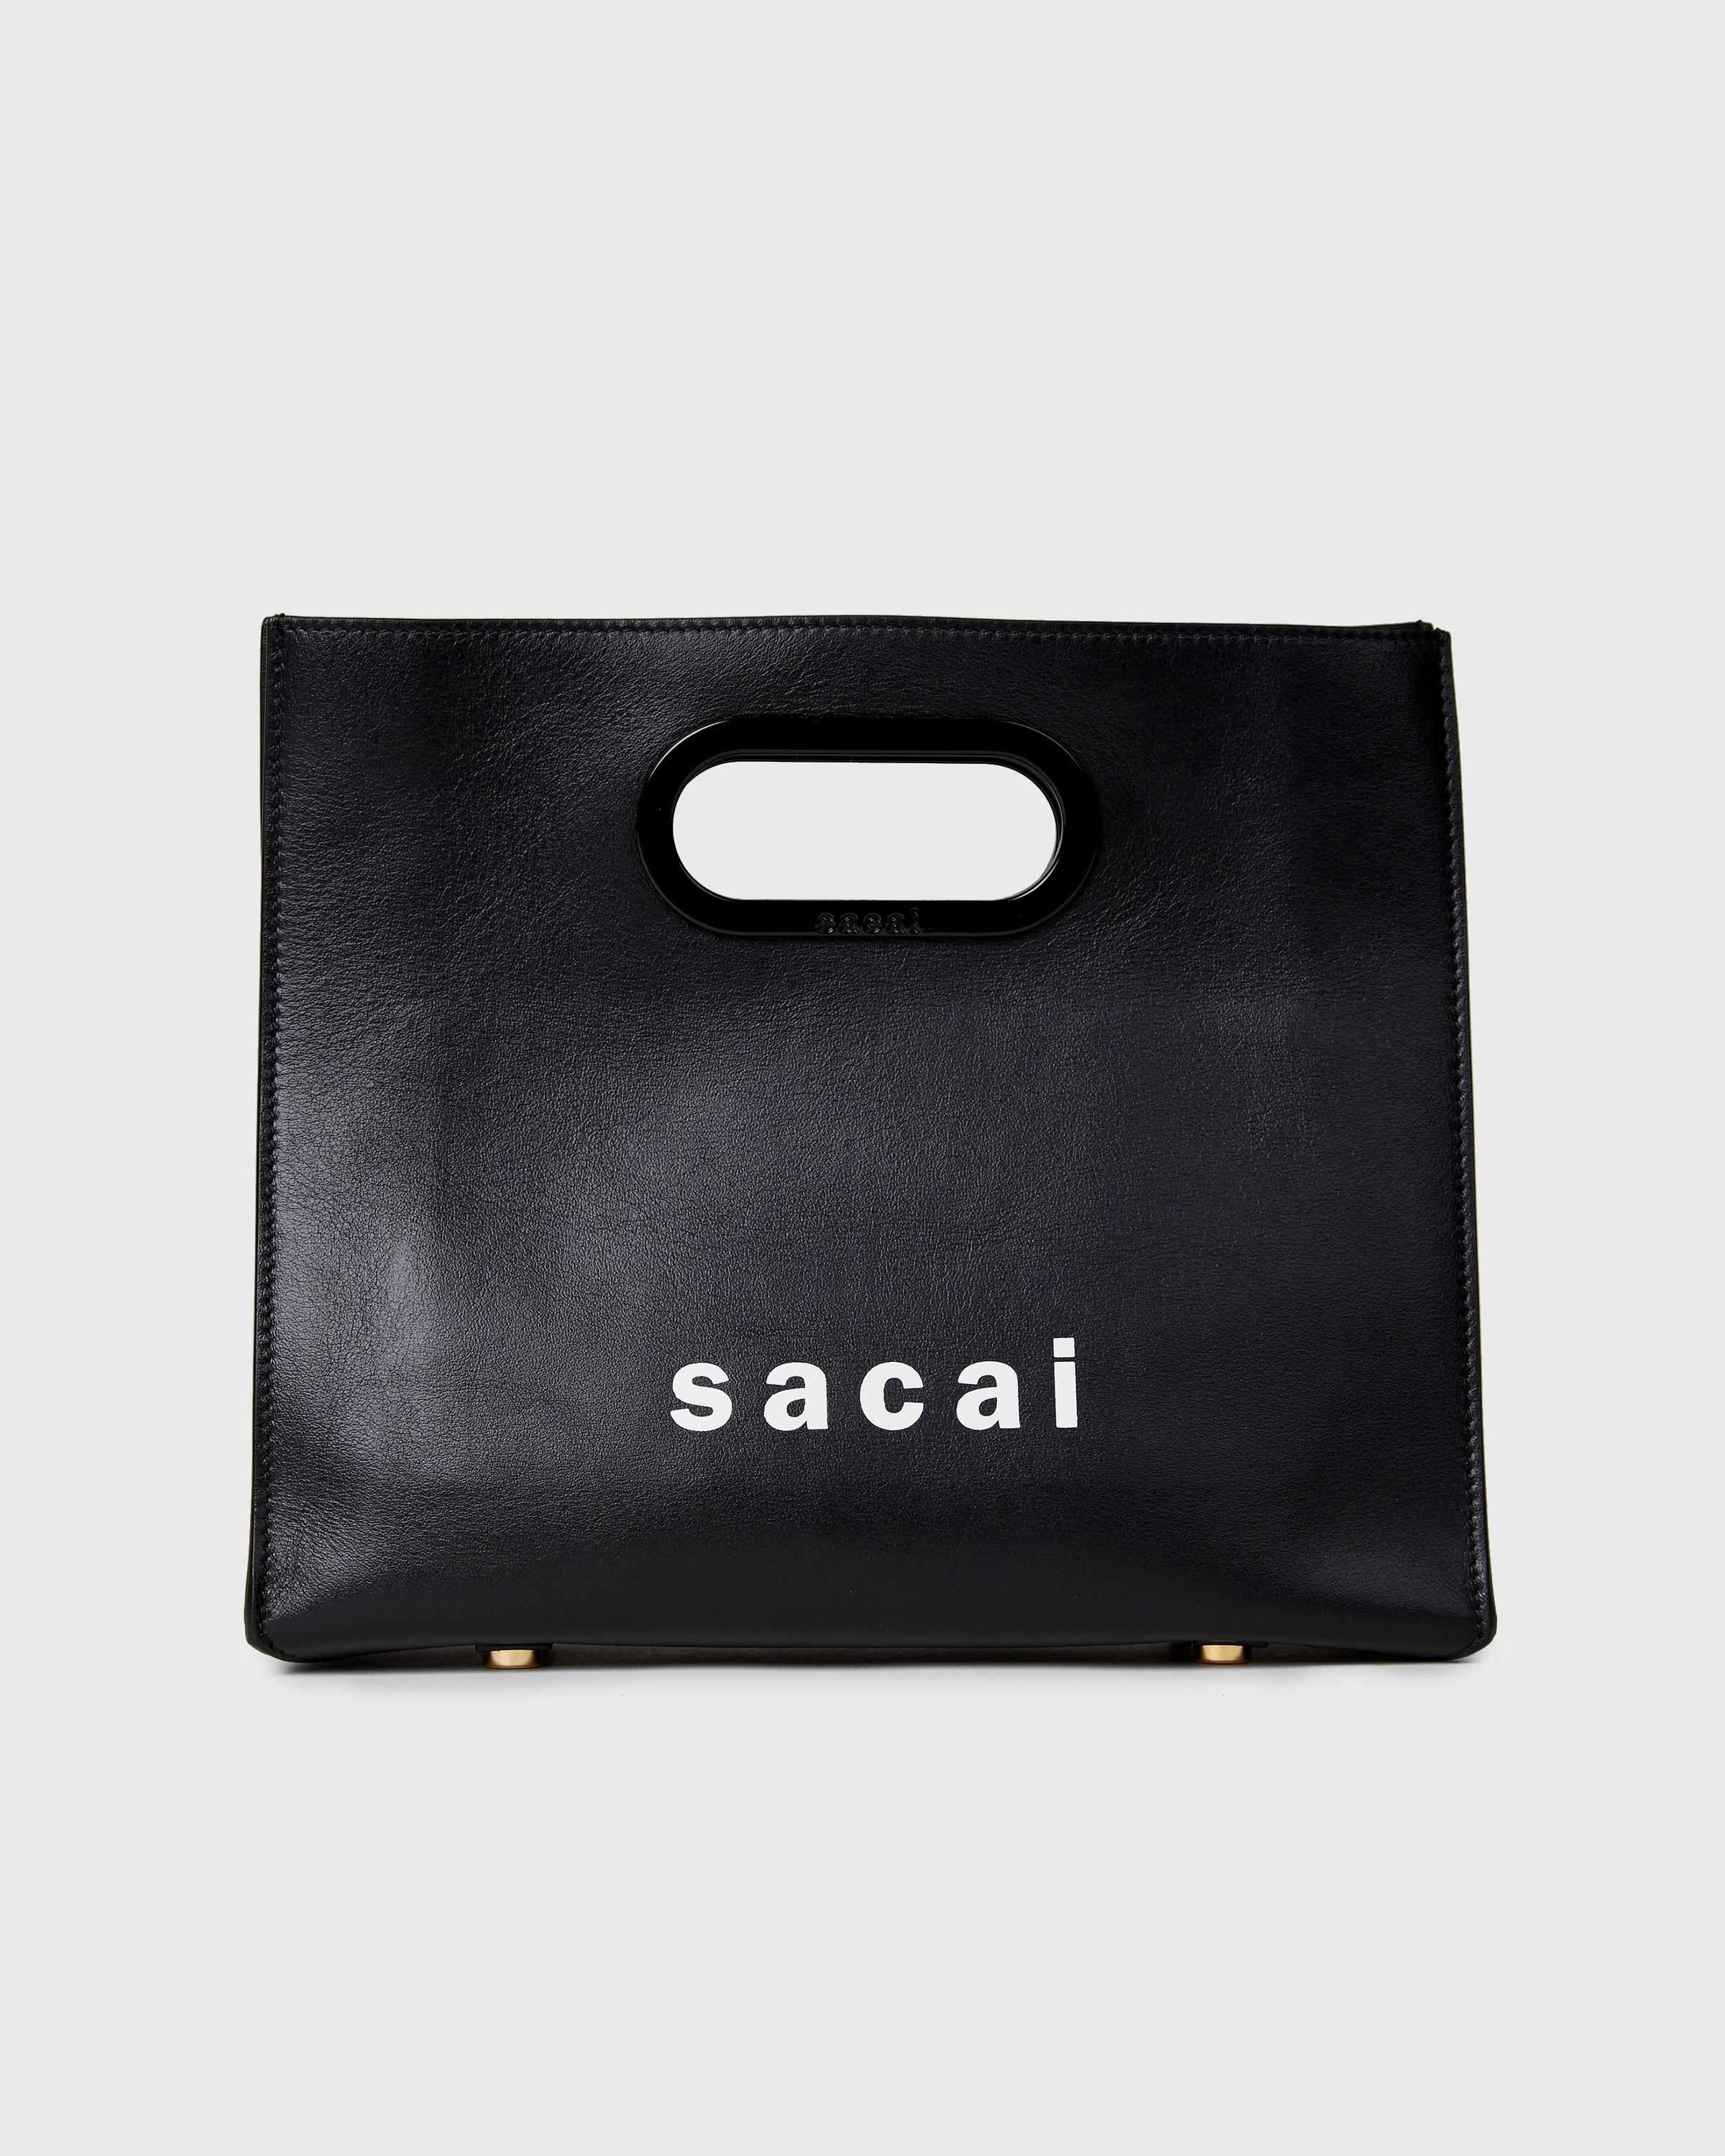 Sacai x Colette Mon Amour – Bag Black | Highsnobiety Shop